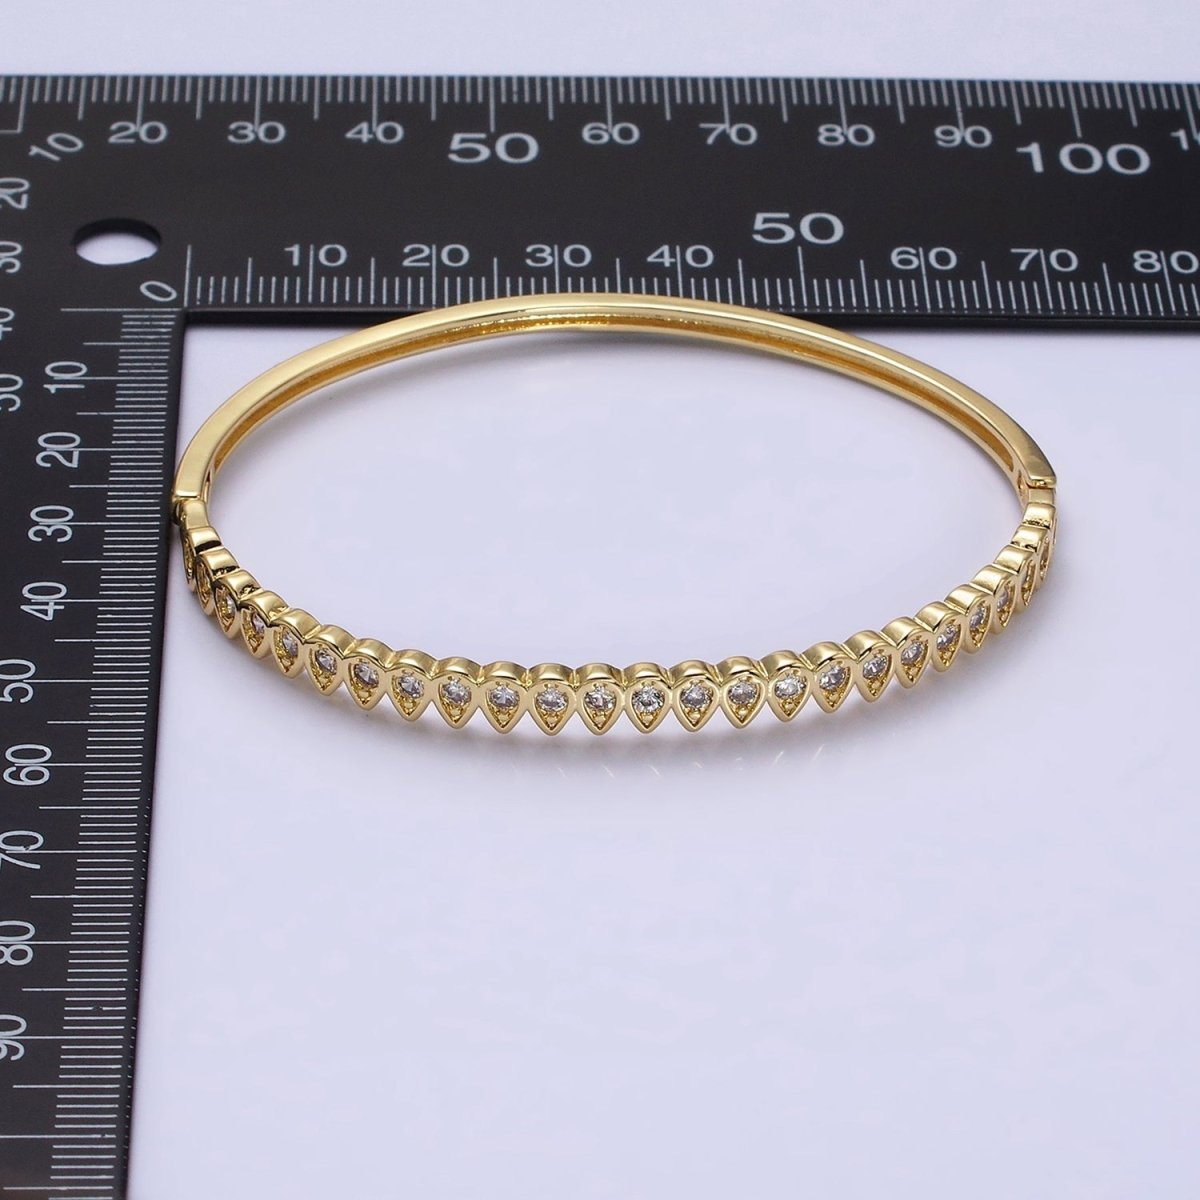 Slim Tear Drop Cz Bangle Bracelet 14k Gold Filled Stackable Bangle Bracelet | Hinge Locking | WA-1755 Clearance Pricing - DLUXCA